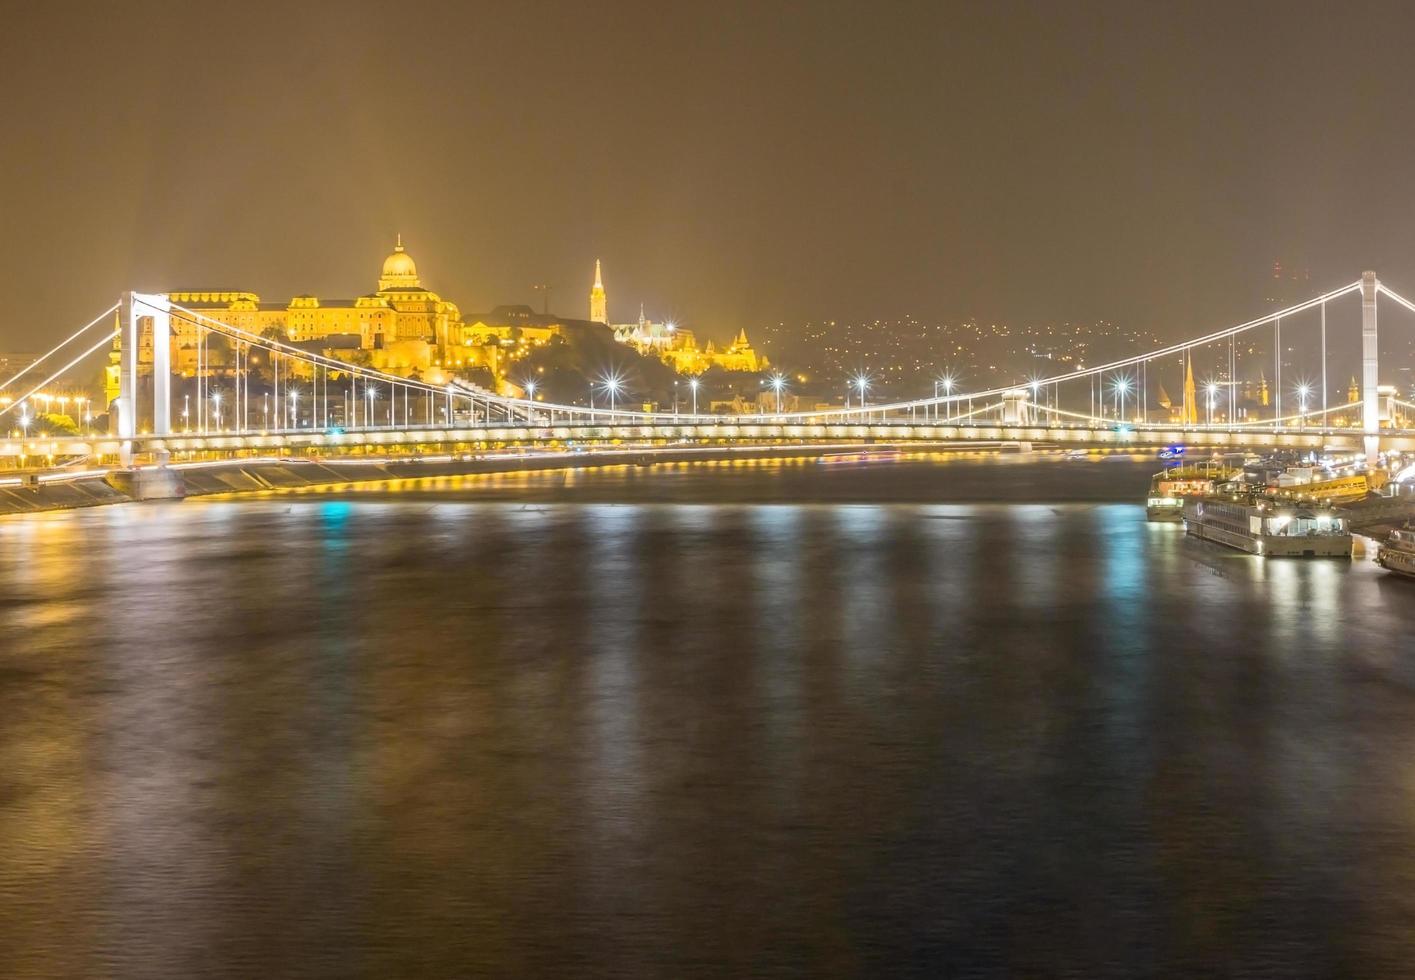 nacht uitzicht op elizabeth bridge in boedapest, hongarije foto